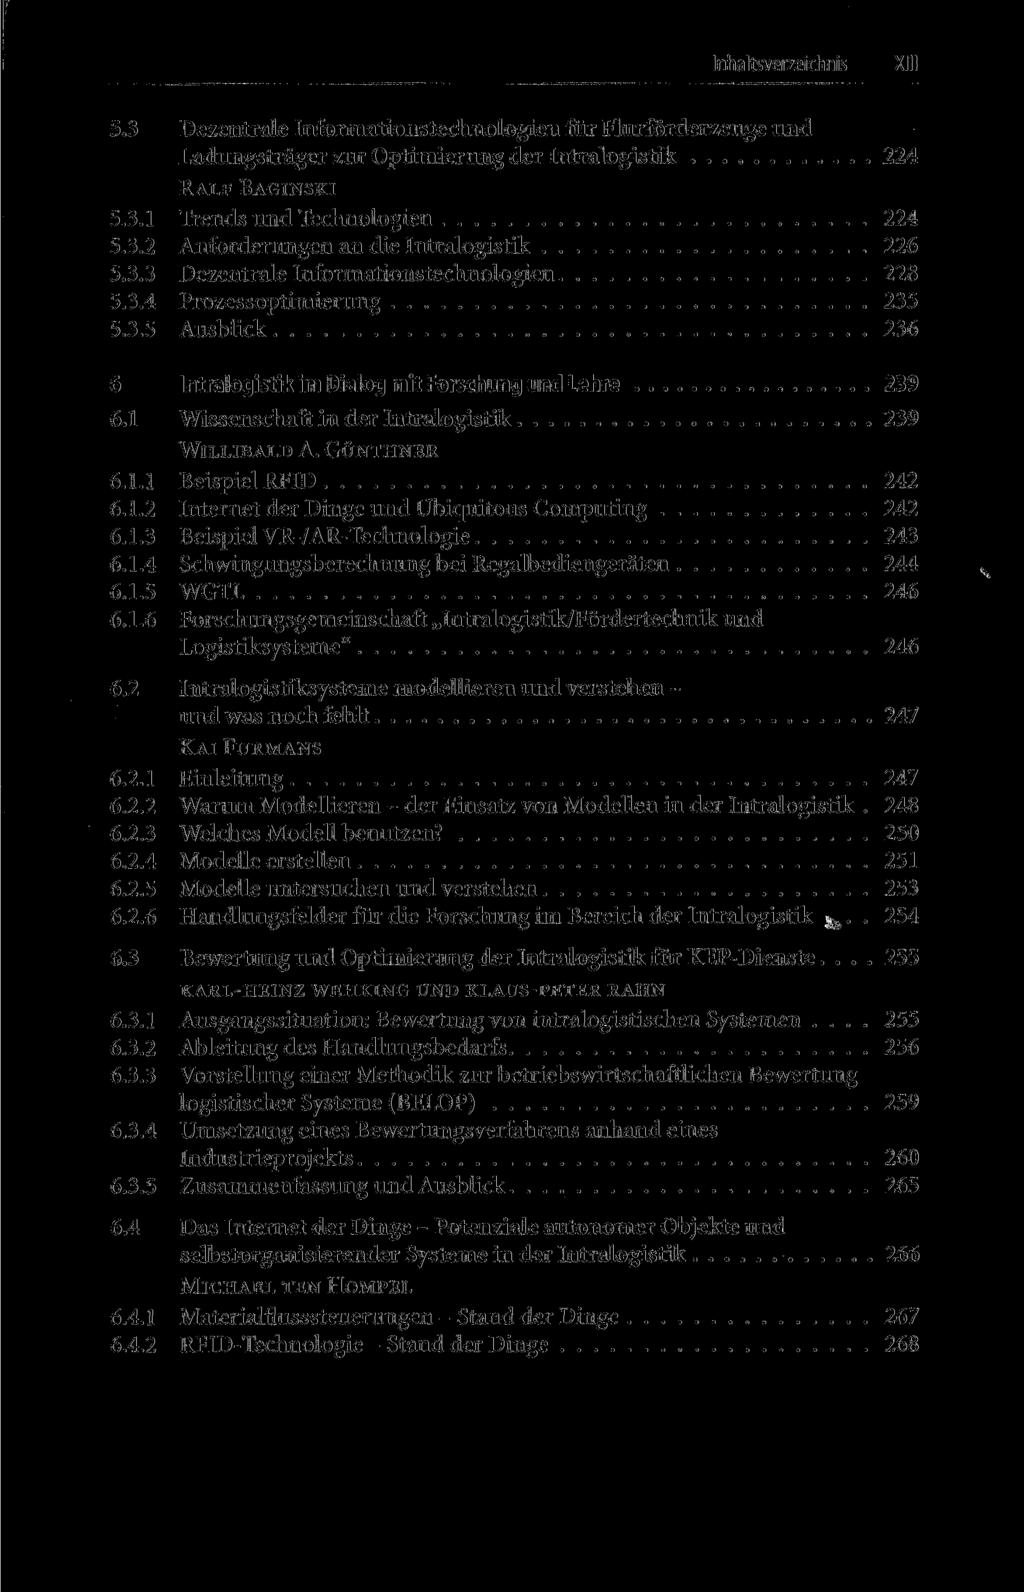 Inhaltsverzeichnis XIII 5.3 Dezentrale Informationstechnologien für Flurförderzeuge und Ladungsträger zur Optimierung der Intralogistik 224 RALF BAGINSKI 5.3.1 Trends und Technologien 224 5.3.2 Anforderungen an die Intralogistik 226 5.